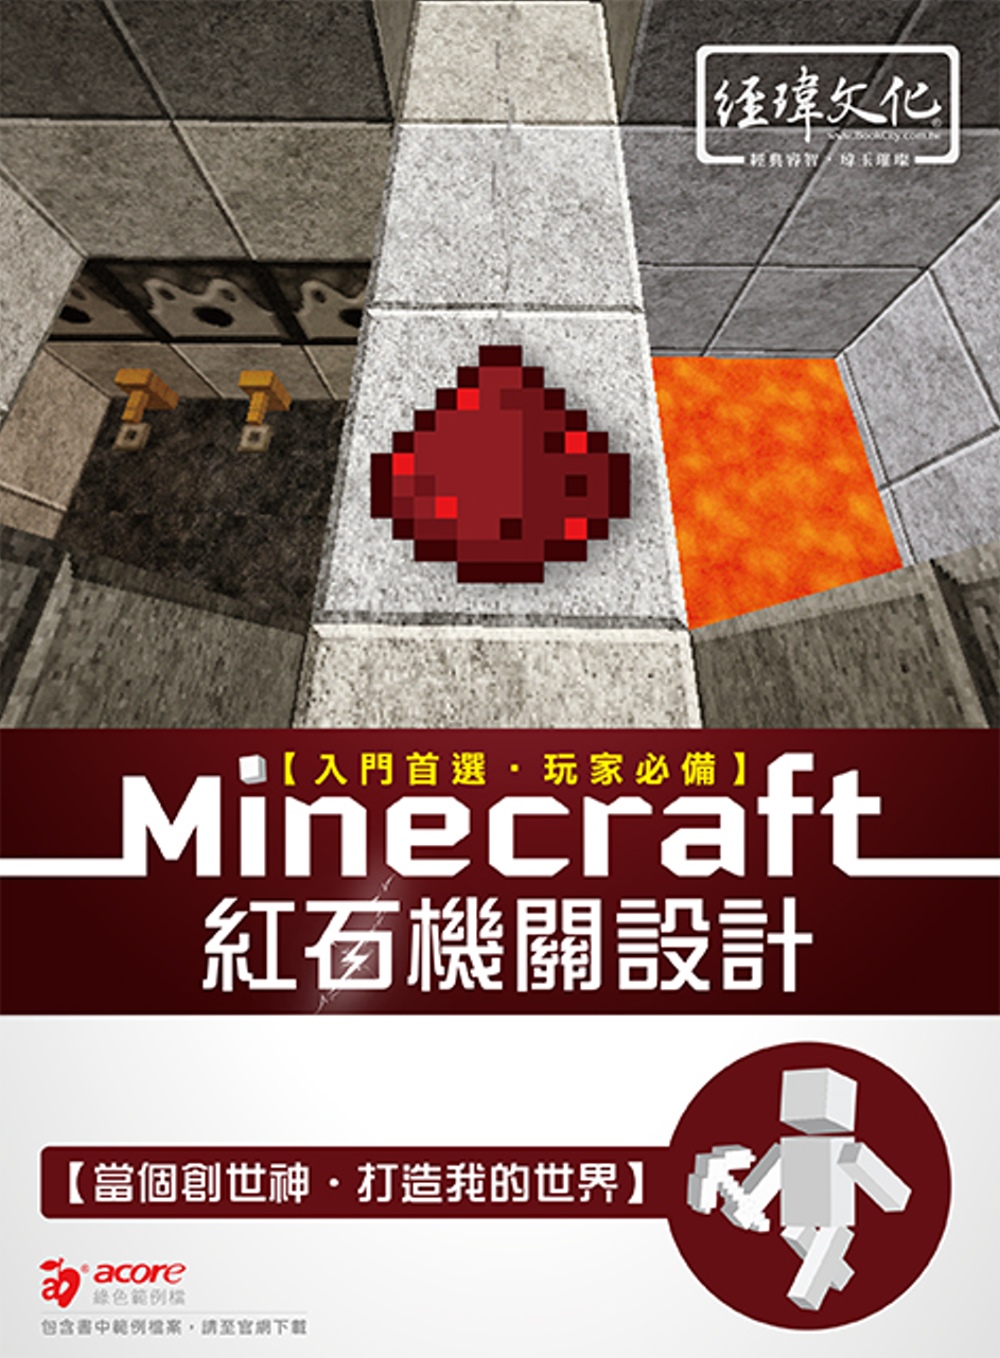 Minecraft 紅石機關設計